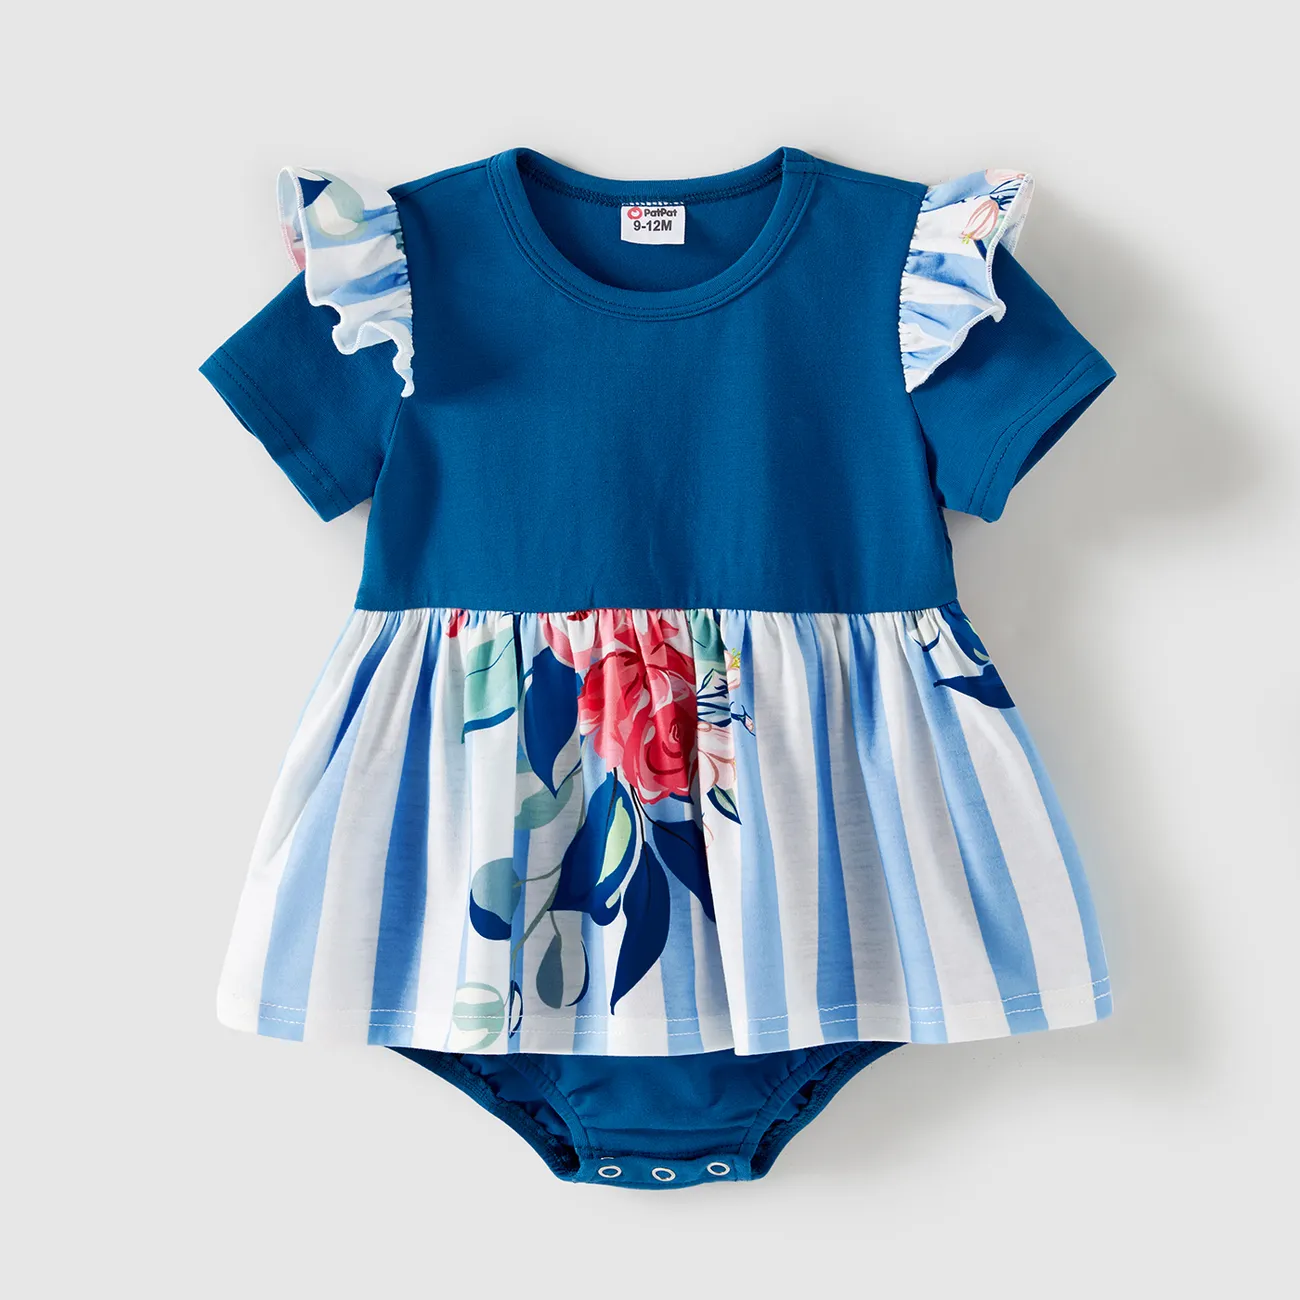 Muttertag Familien-Looks Kurzärmelig Familien-Outfits Sets blau big image 1